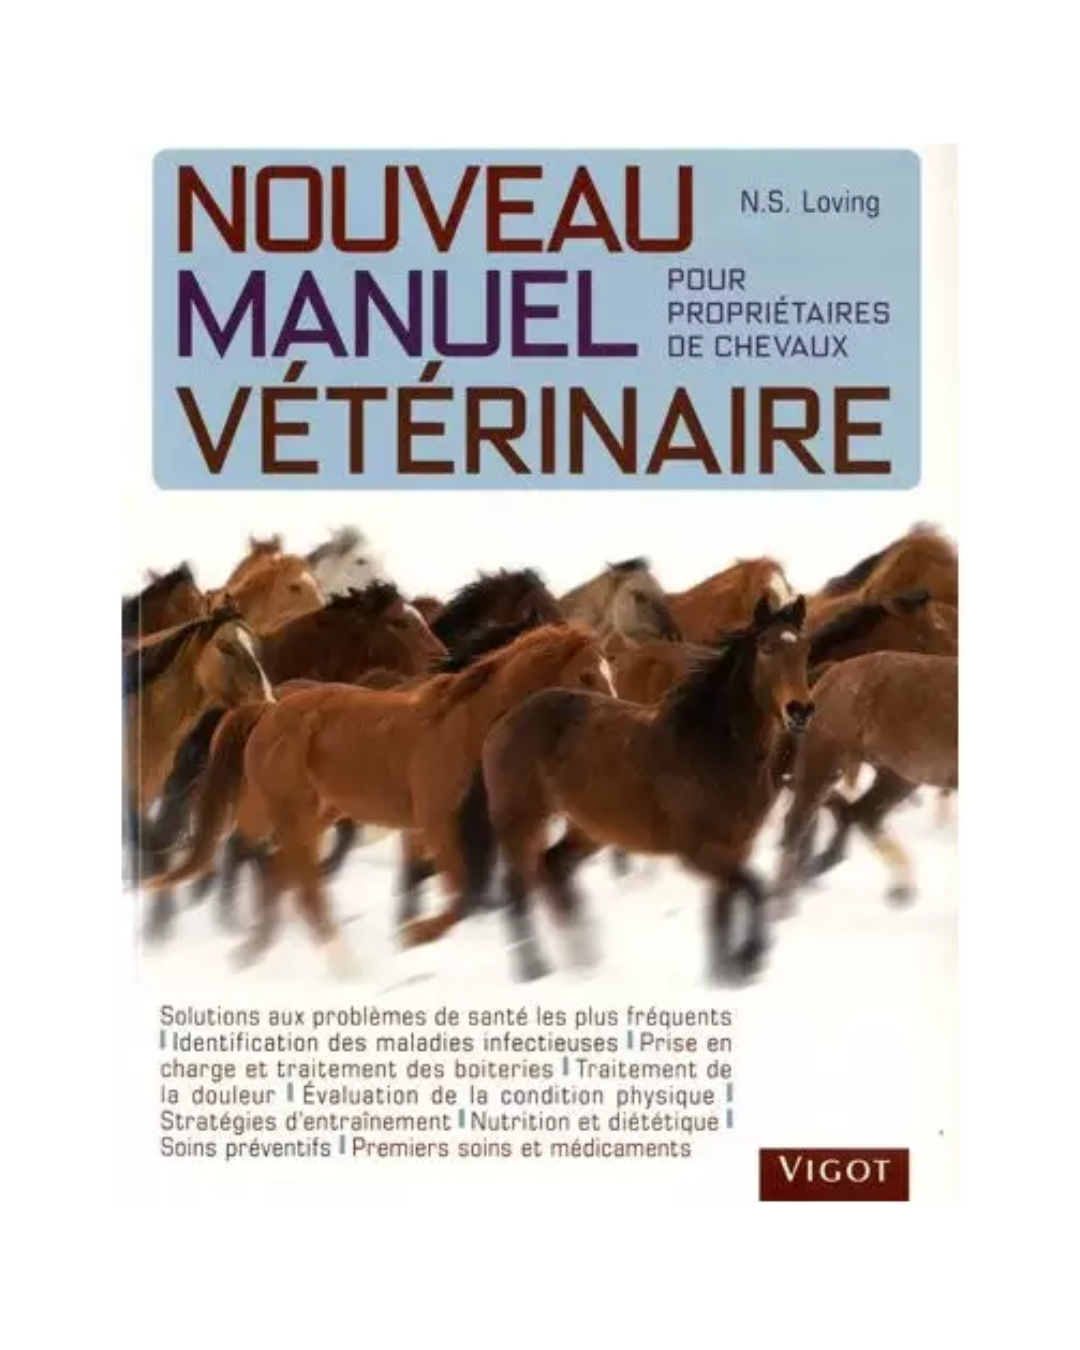 Nouveau manuel vétérinaire pour propriétaires de chevaux N.E.